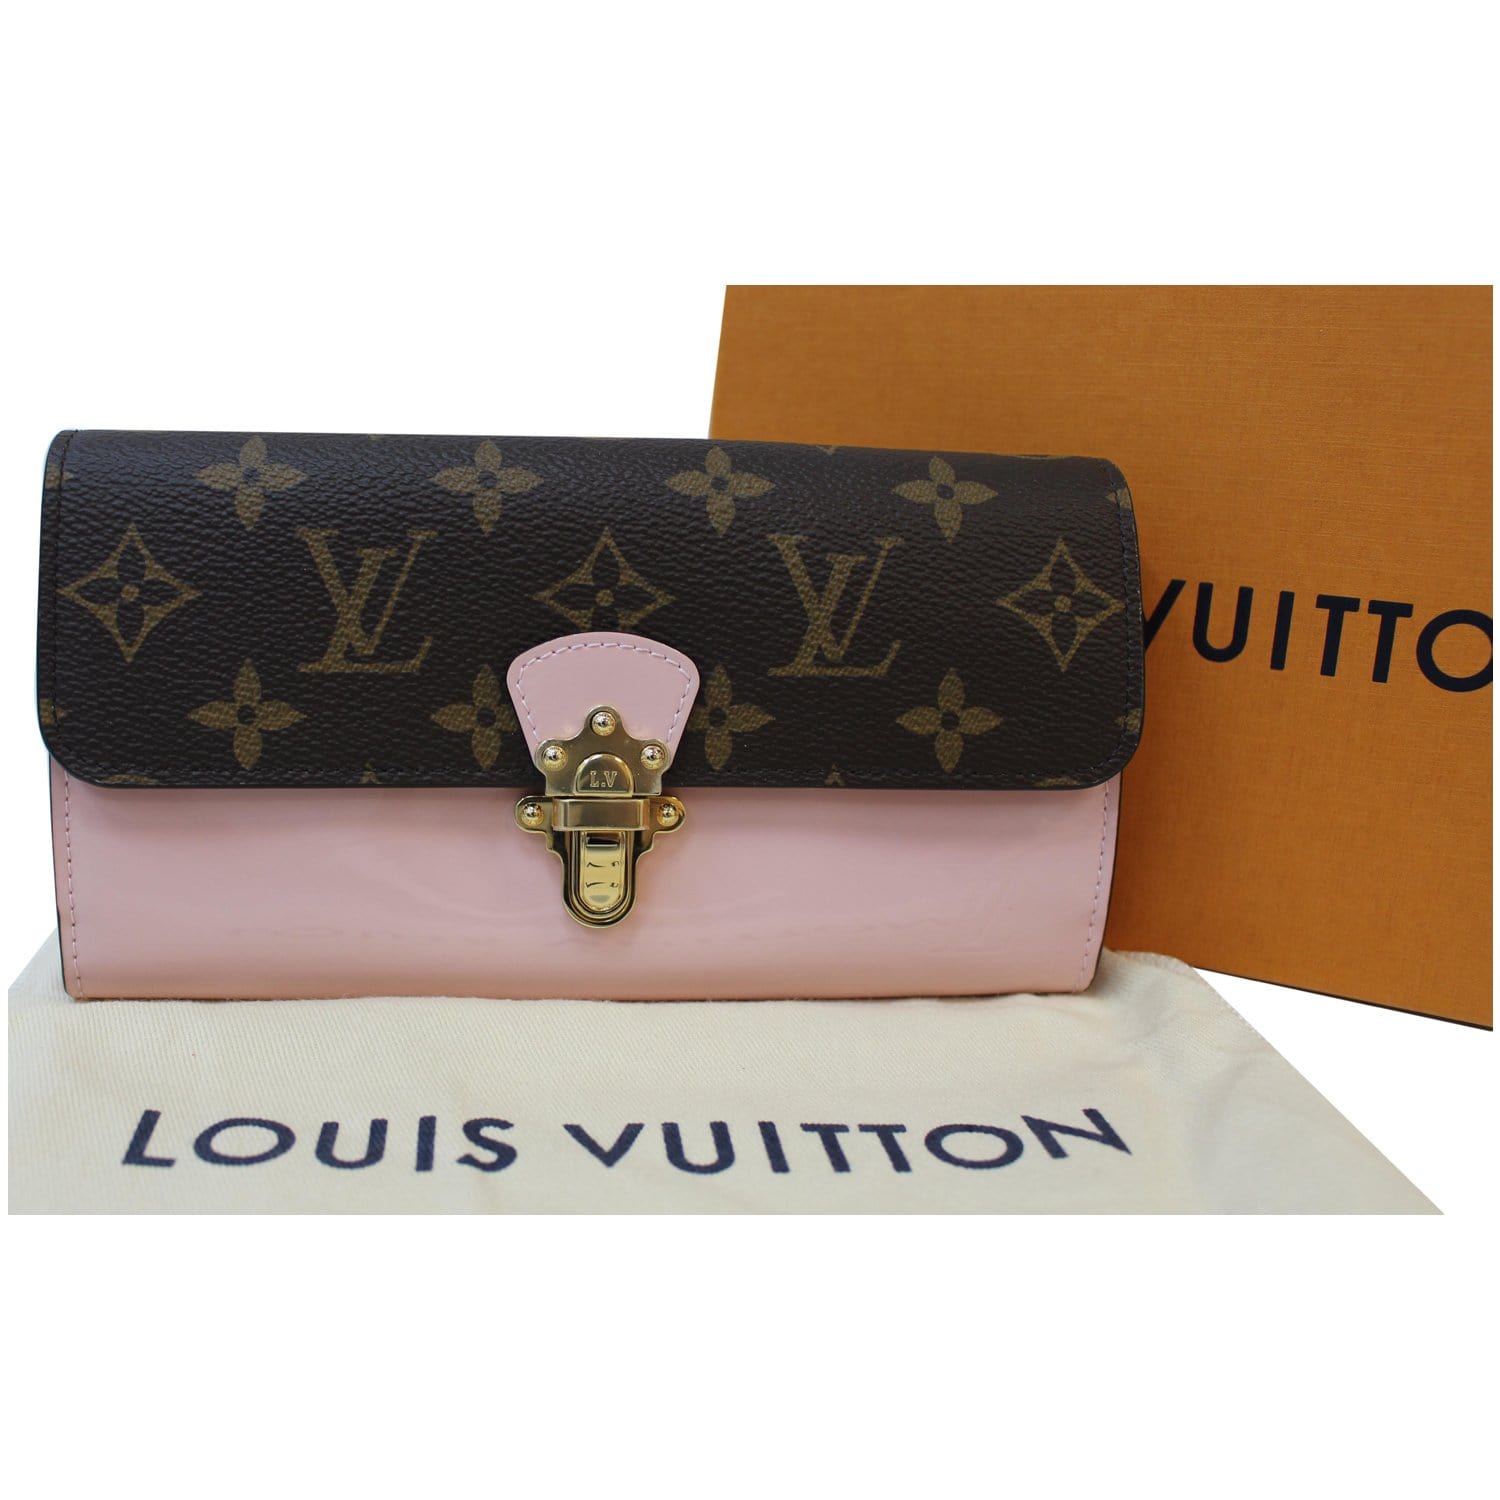 Louis Vuitton Unboxing - Double V